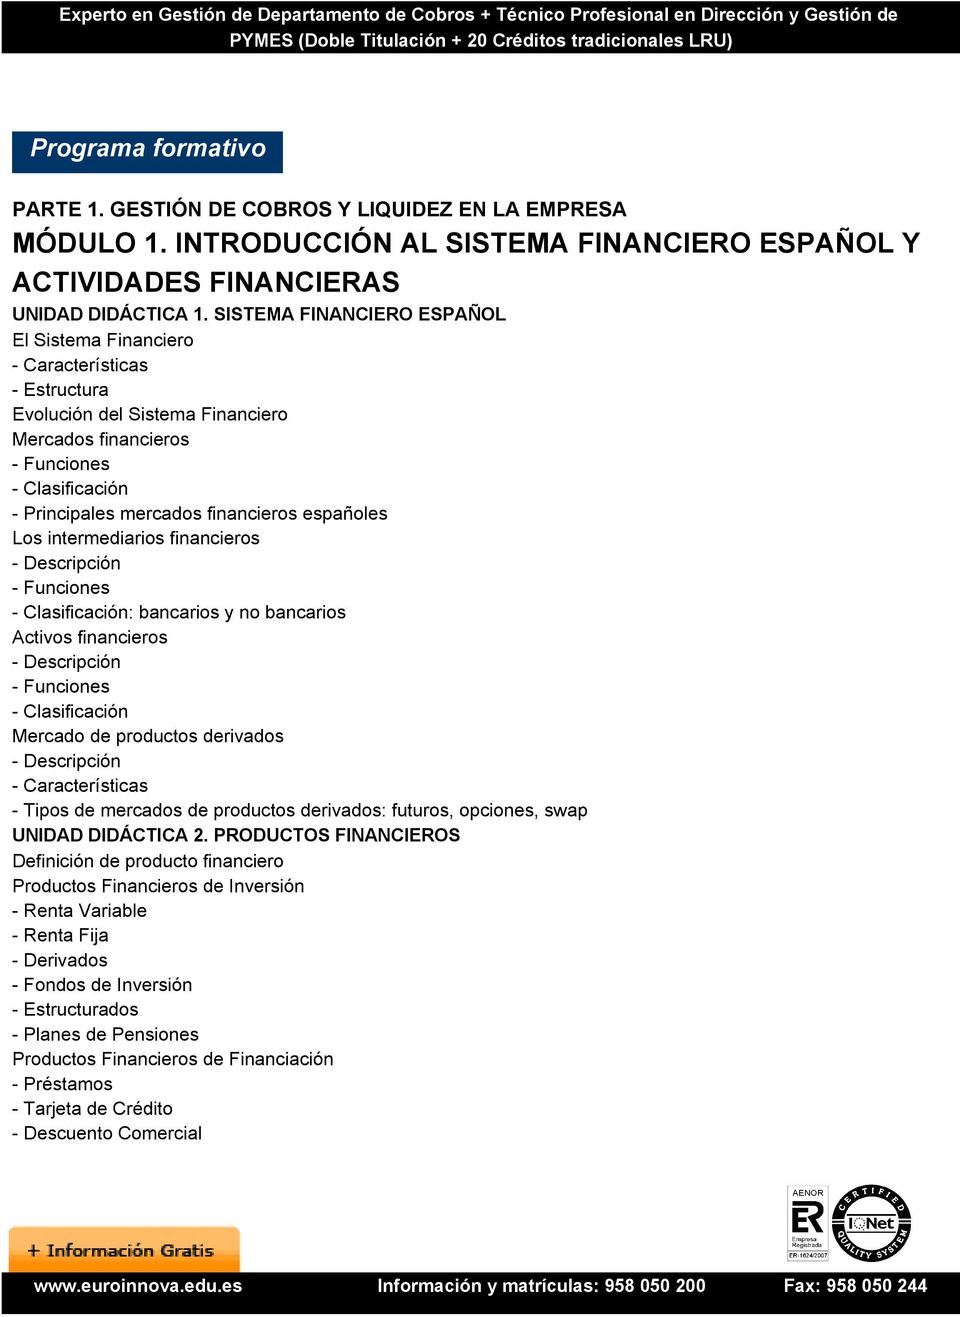 españoles Los intermediarios financieros - Descripción - Funciones - Clasificación: bancarios y no bancarios Activos financieros - Descripción - Funciones - Clasificación Mercado de productos